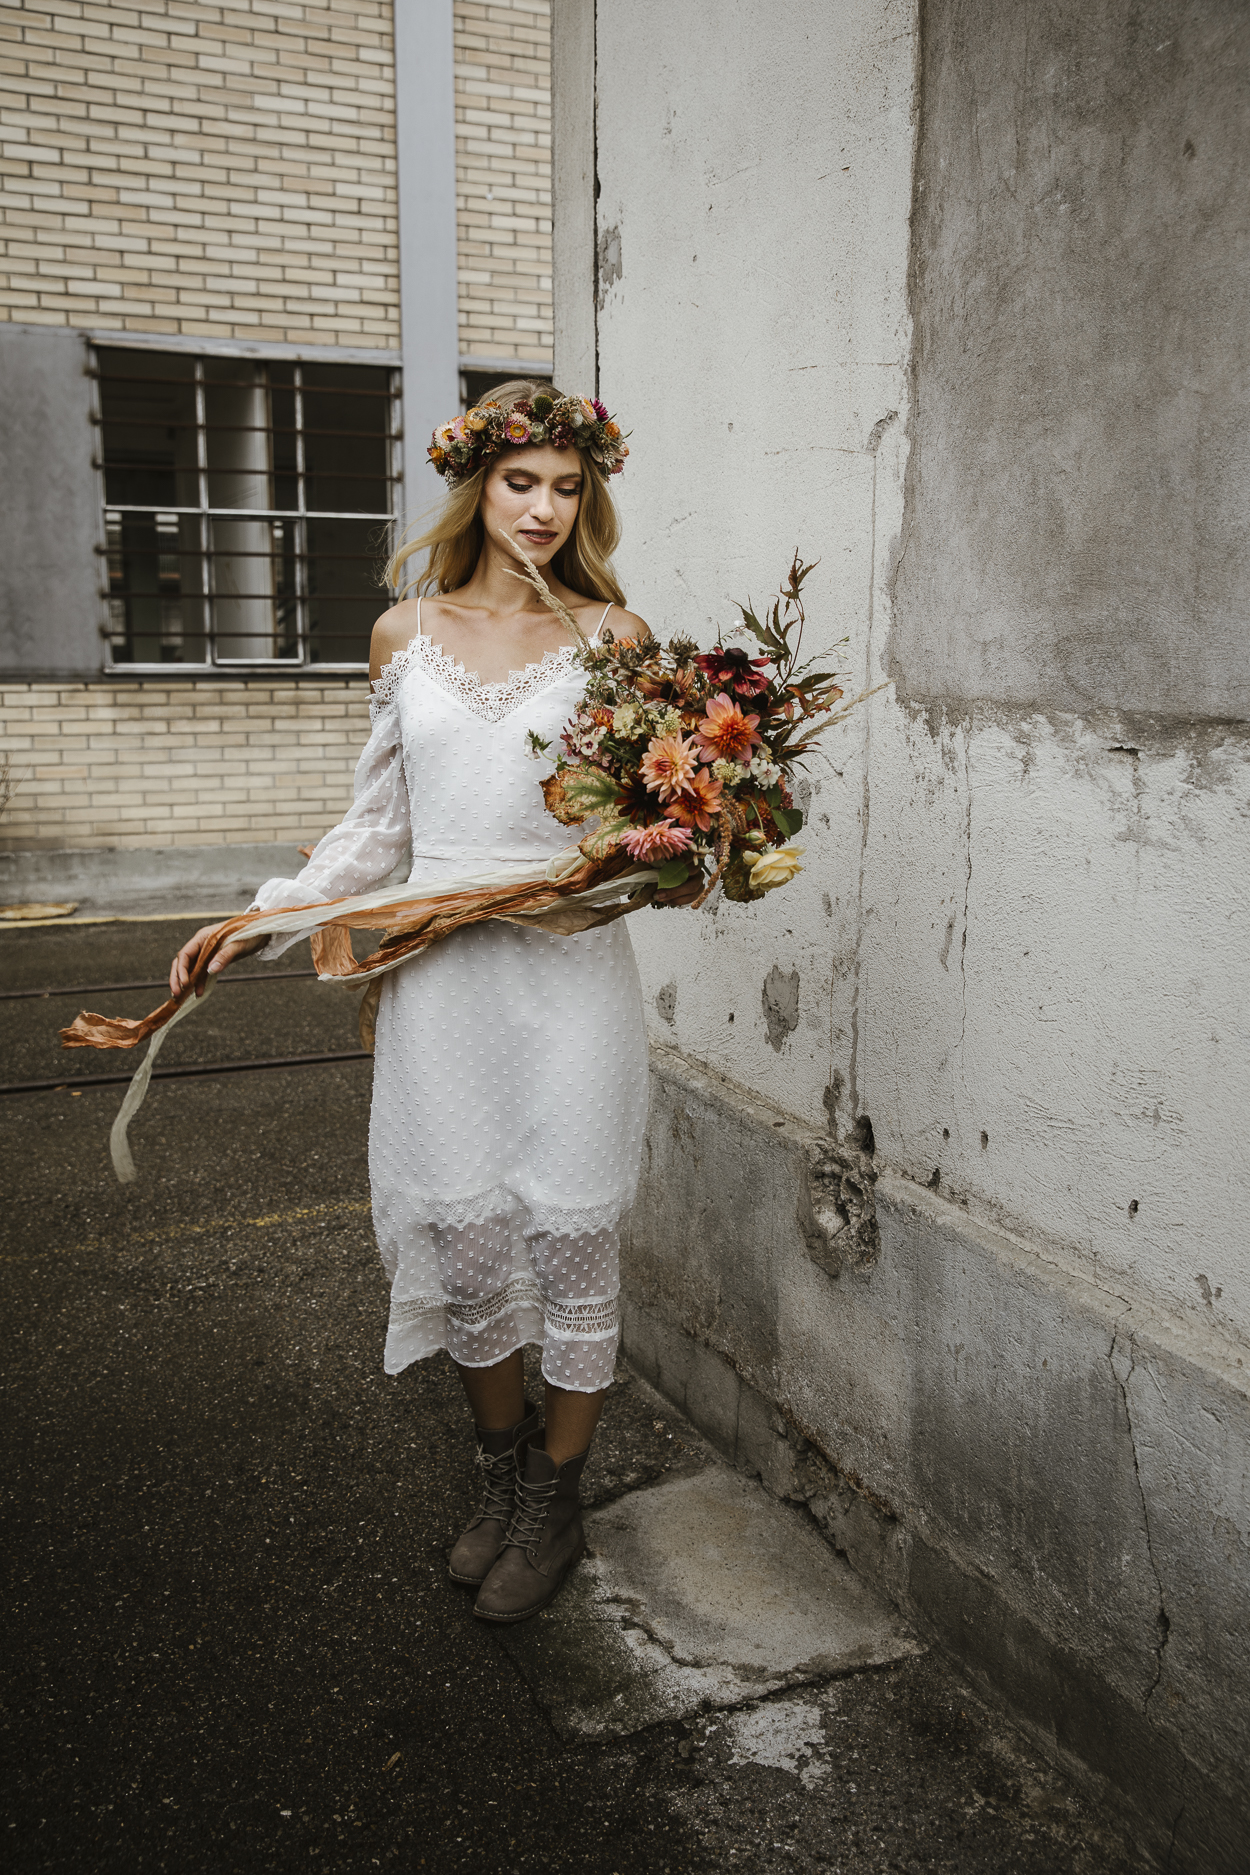 nachhaltig heiraten mit slowflowers von fleuraissance